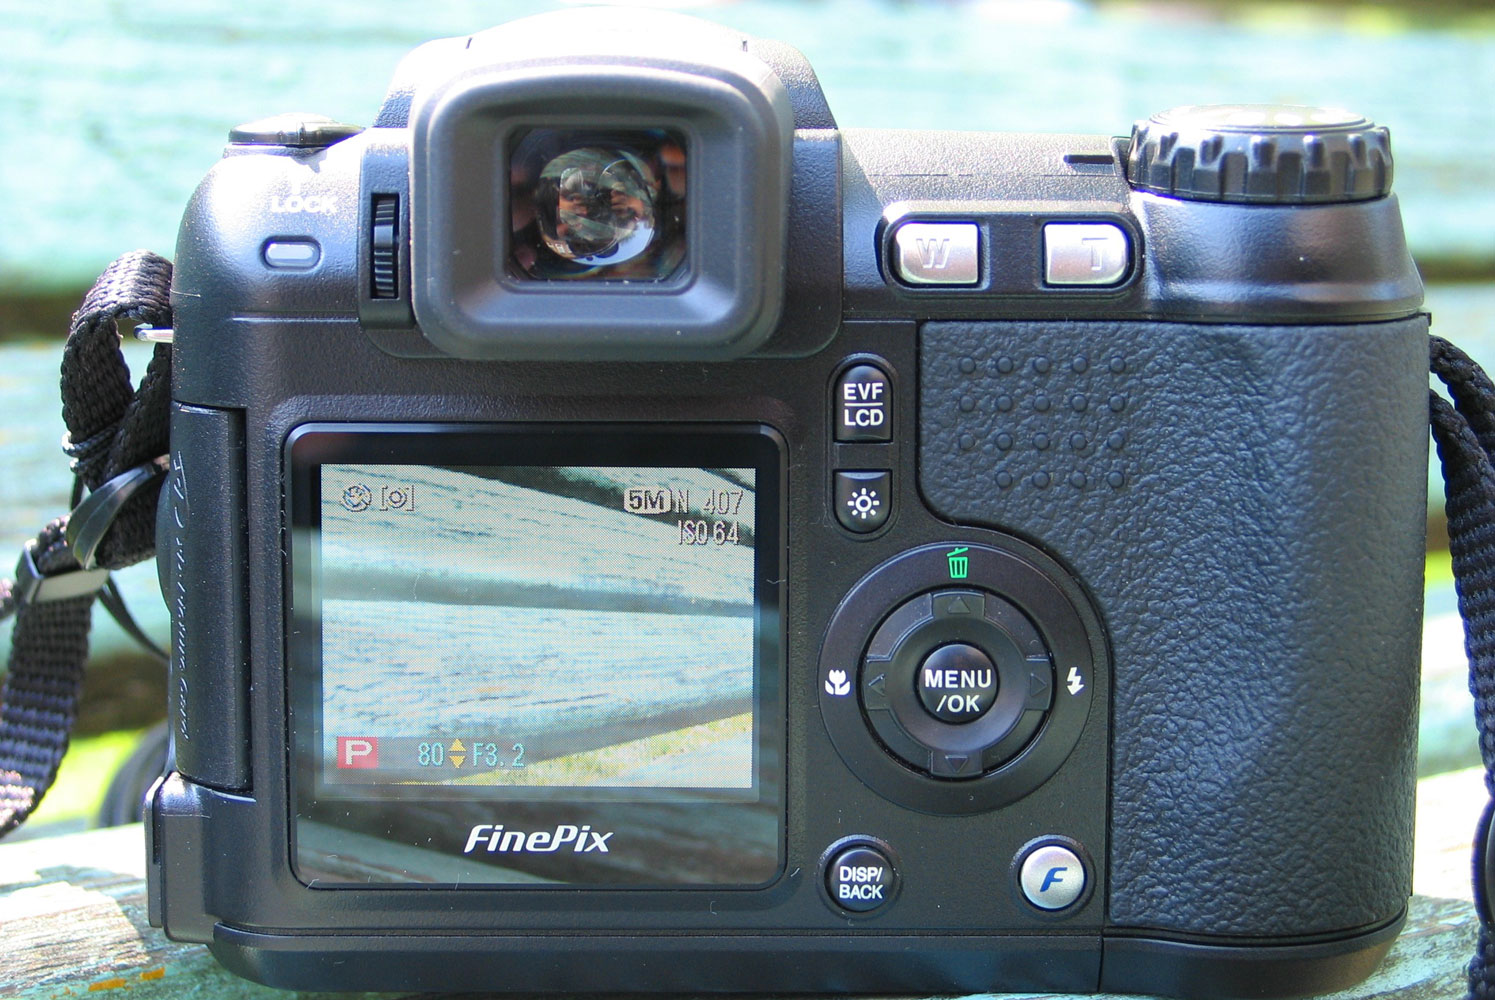 Mona Lisa moe passen Recenzja: FujiFilm FinePix S5600 - Dobry aparat w dobrej cenie | PurePC.pl